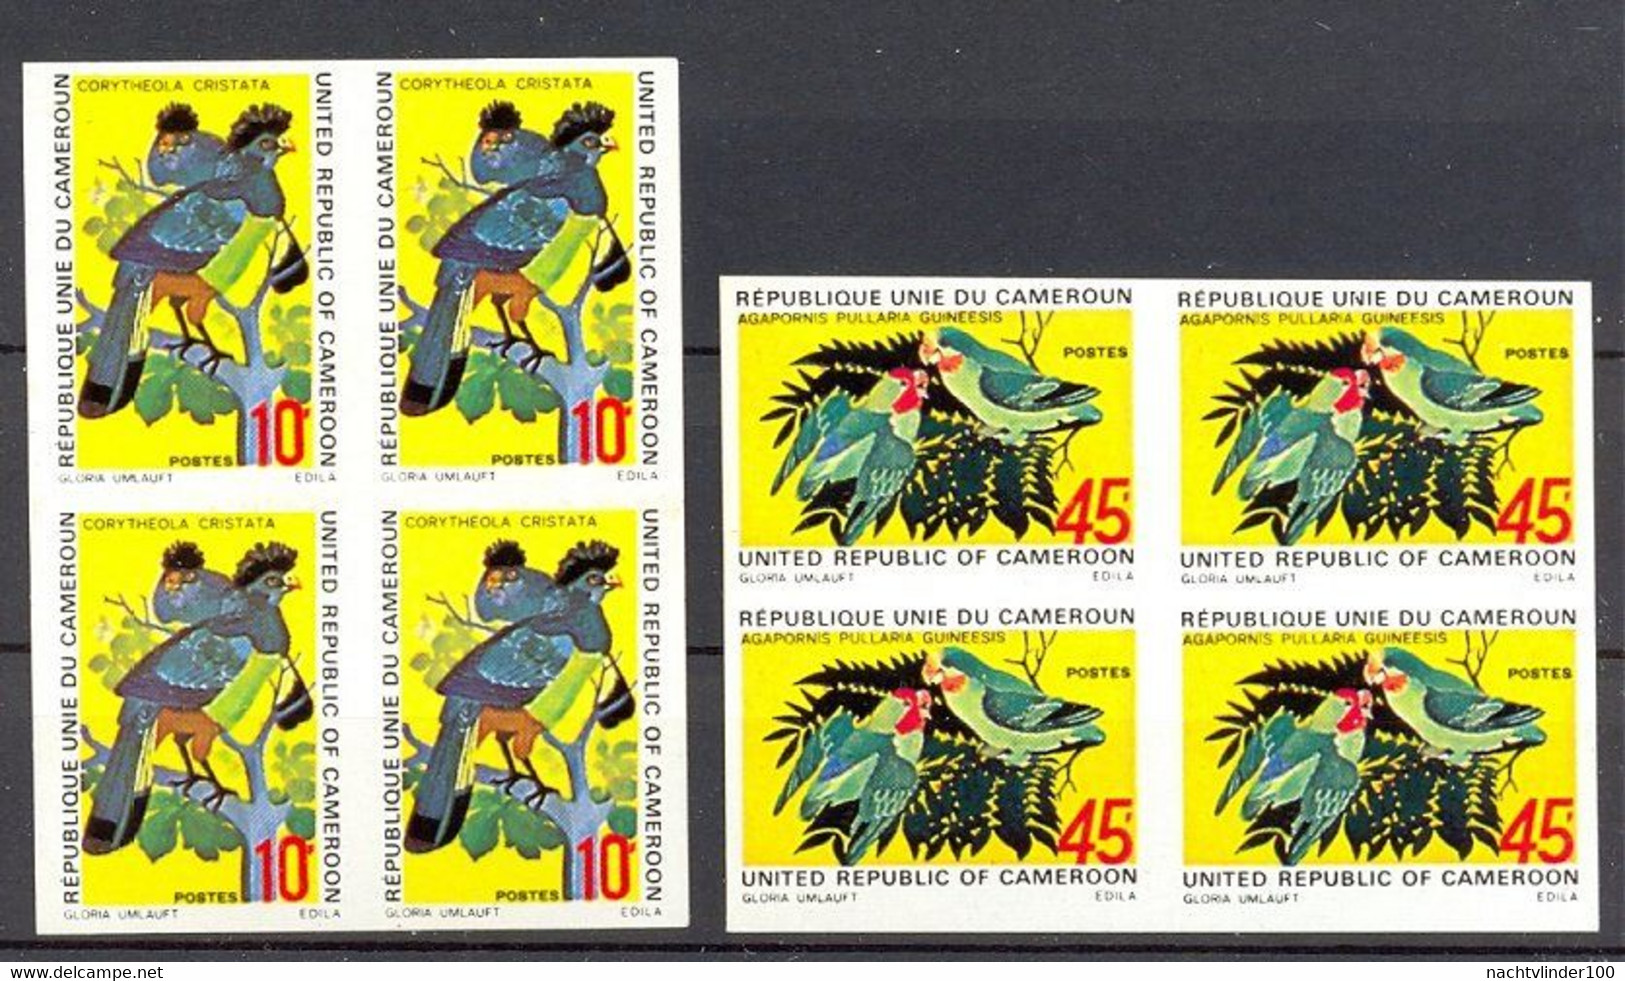 Naa0426 FAUNA VOGELS PAPEGAAI HOCCO BIRDS PARROT VÖGEL AVES OISEAUX ** ONGETAND IMPERF ** CAMEROUN 1972 PF/MNH #READ# - Verzamelingen, Voorwerpen & Reeksen